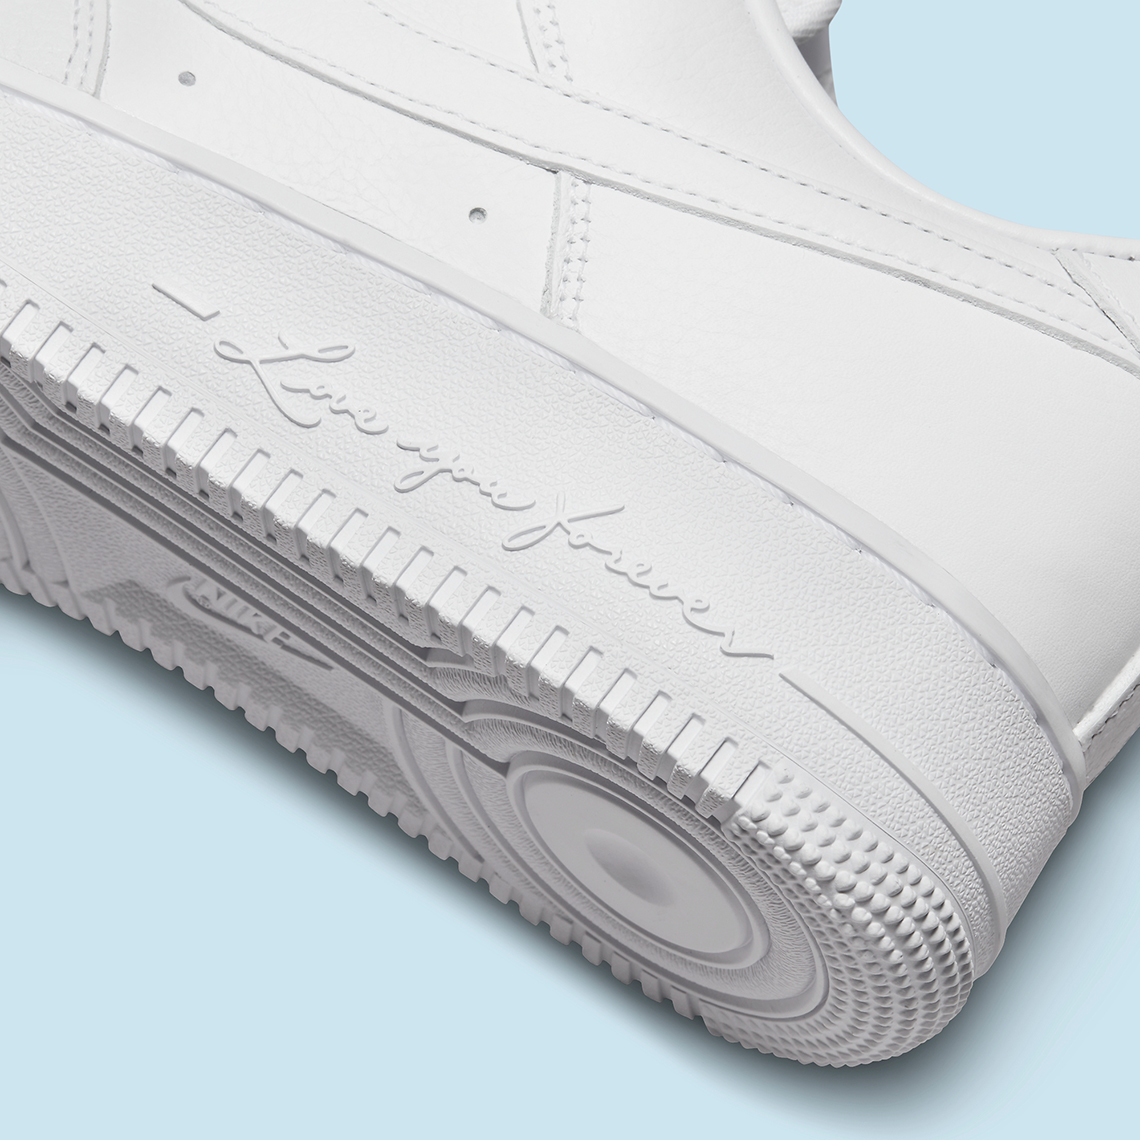 Drake x NOCTA x Nike Air Force 1 Low CZ8065-100 | SneakerNews.com